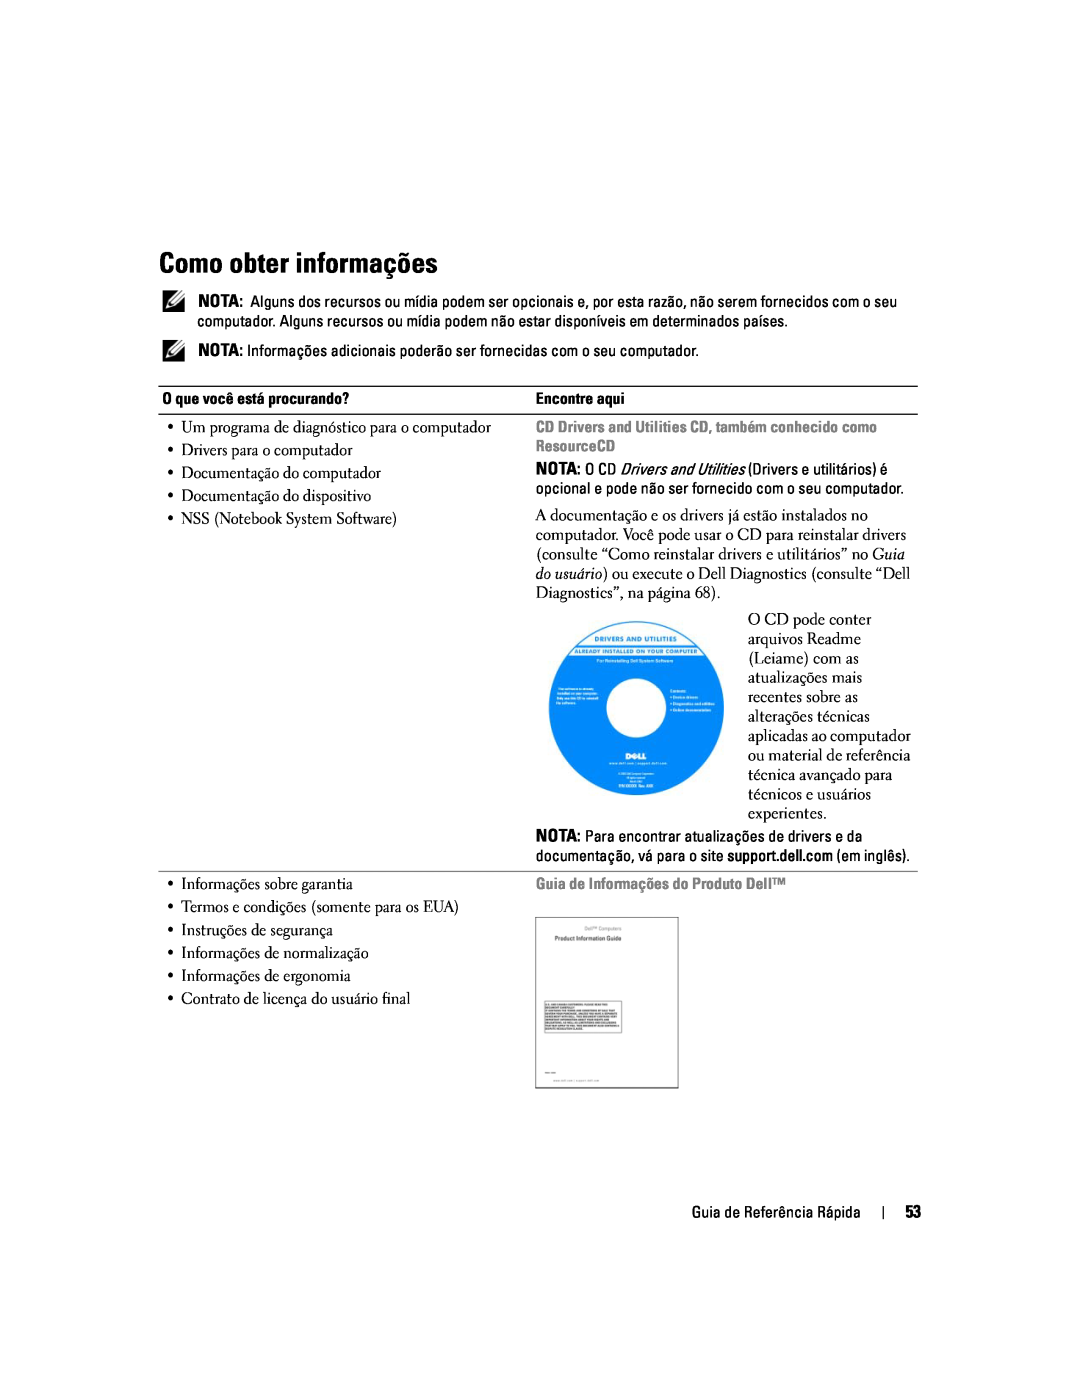 Dell D620 manual Como obter informações, ResourceCD, Guia de Informações do Produto Dell 